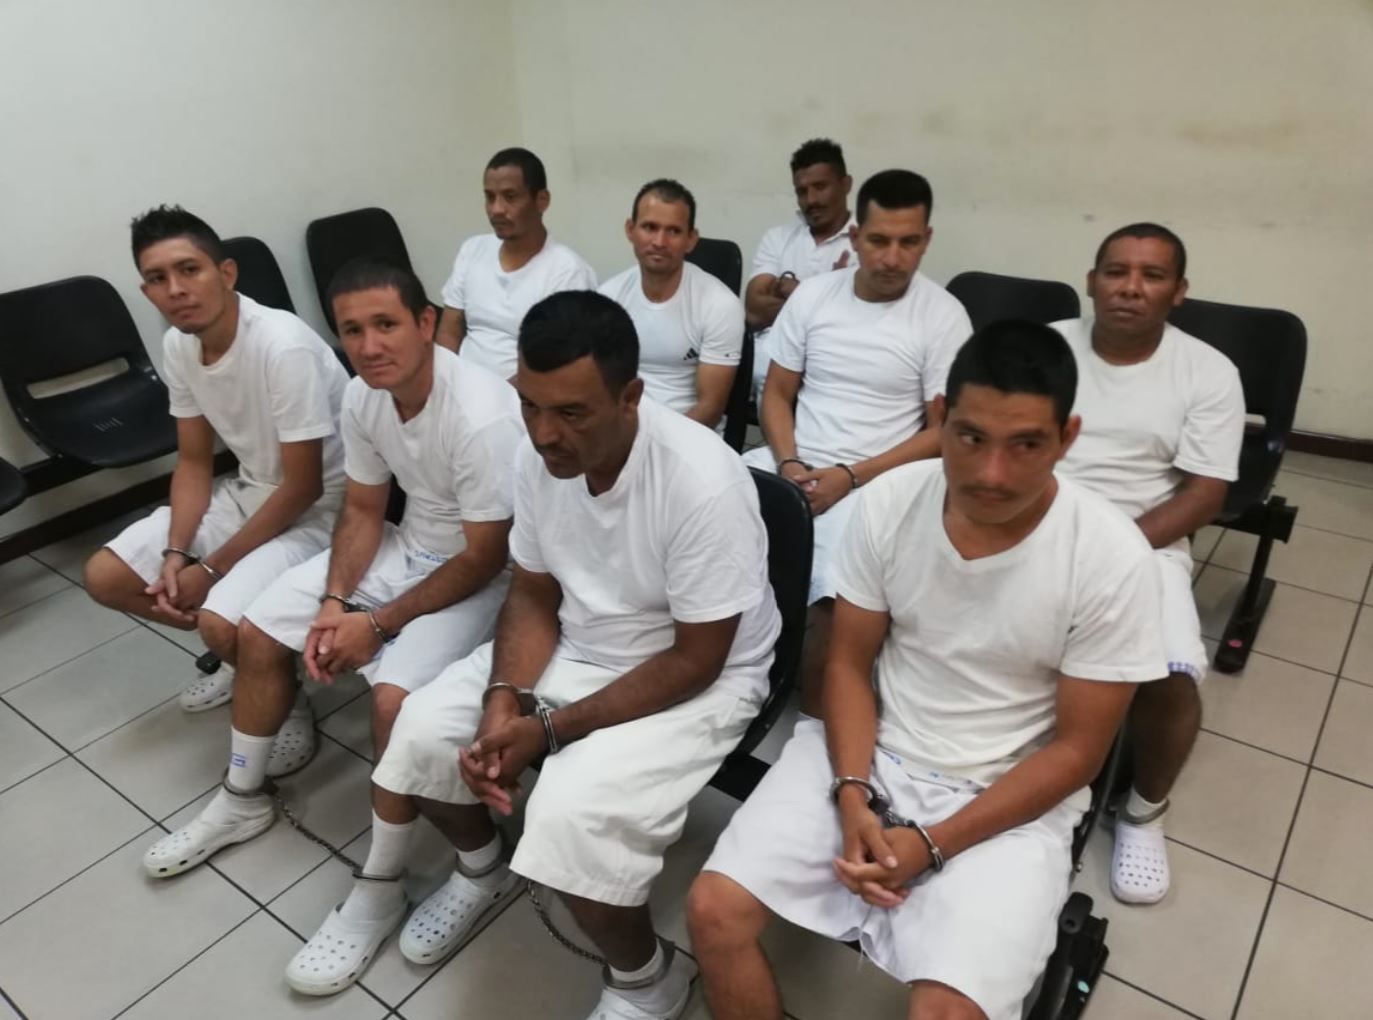 Los guatemaltecos fueron enviados a prisión en El Salvador. (Foto Prensa Libre: FGR)